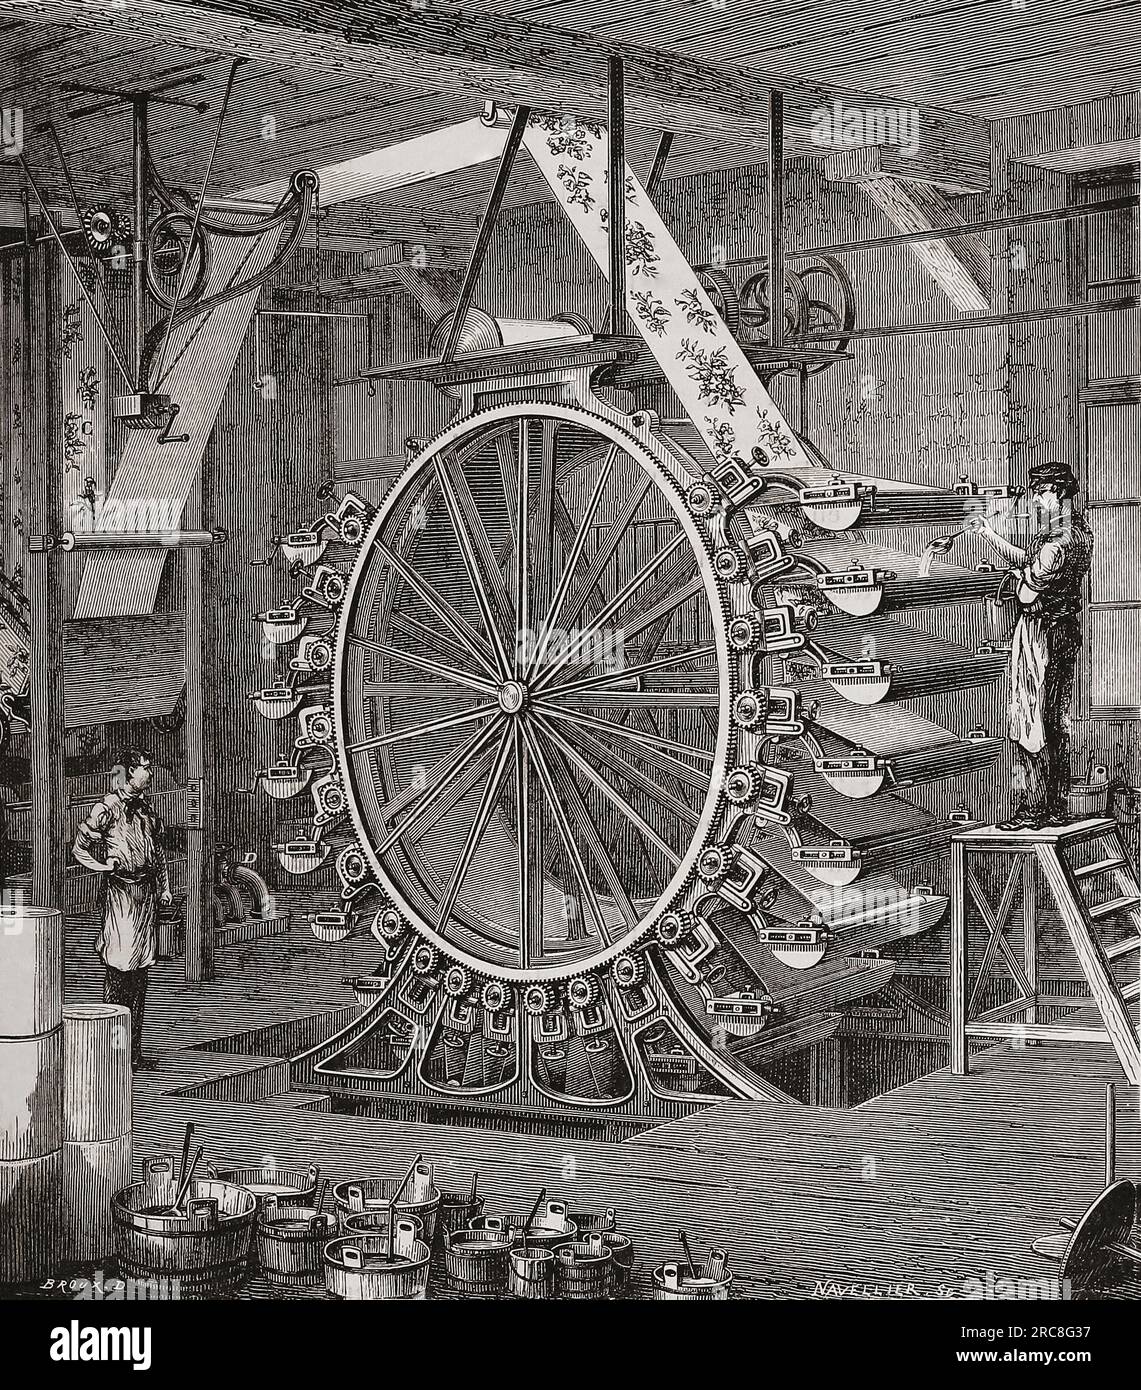 Tapetendruckmaschine aus dem 19. Jahrhundert. Nach einer Illustration in Les merveilles de l'Industrie von Louis Figuier, veröffentlicht 1877. Stockfoto